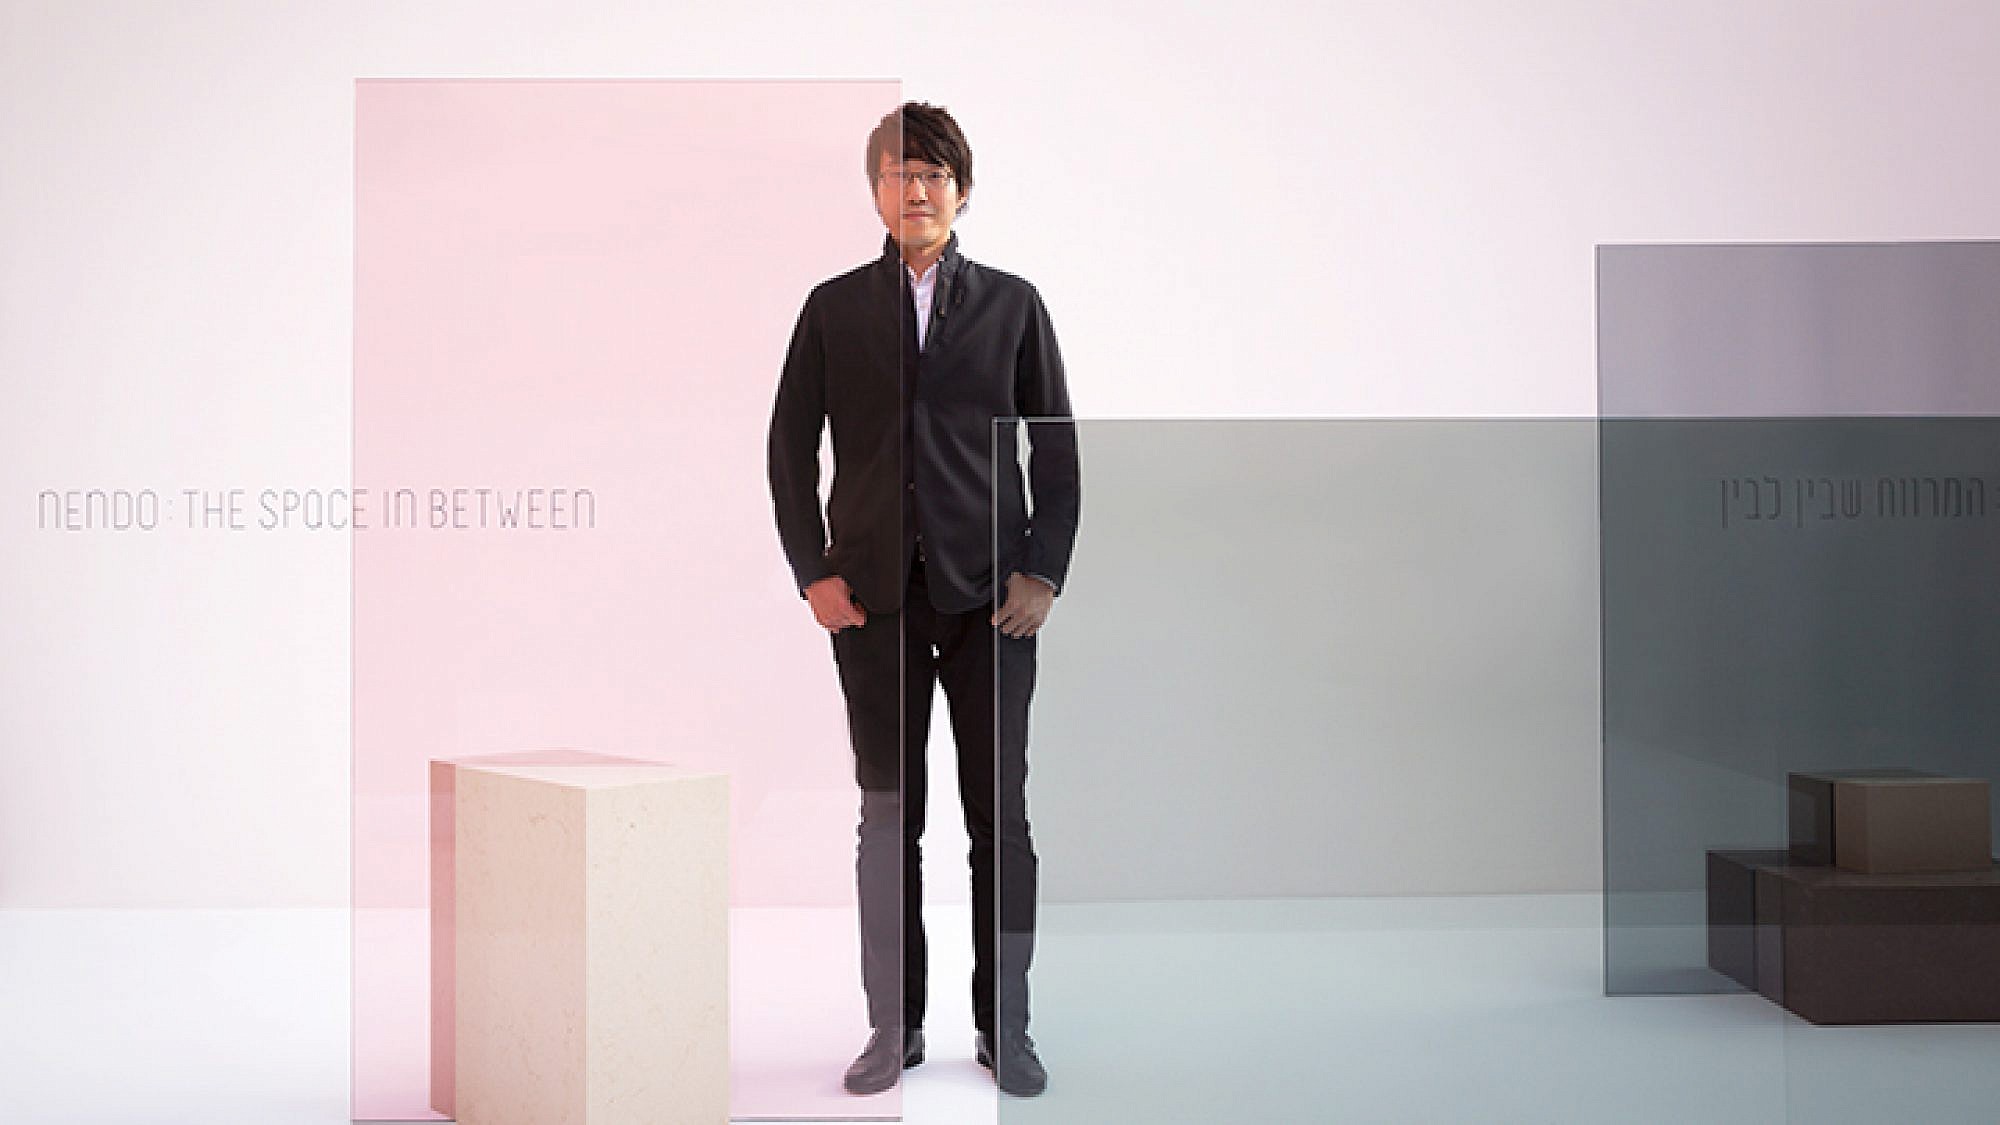 אוקי סאטו שהוכתר כאחד מחמשת המעצבים המשפיעים בעולם, על רקע עבודה שעשה לחברת גלאס איטליה, המוצגת בימים אלה בתערוכה "המרווח שבין לבין" במוזיאון העיצוב חולון | צילום: Takumi Ota